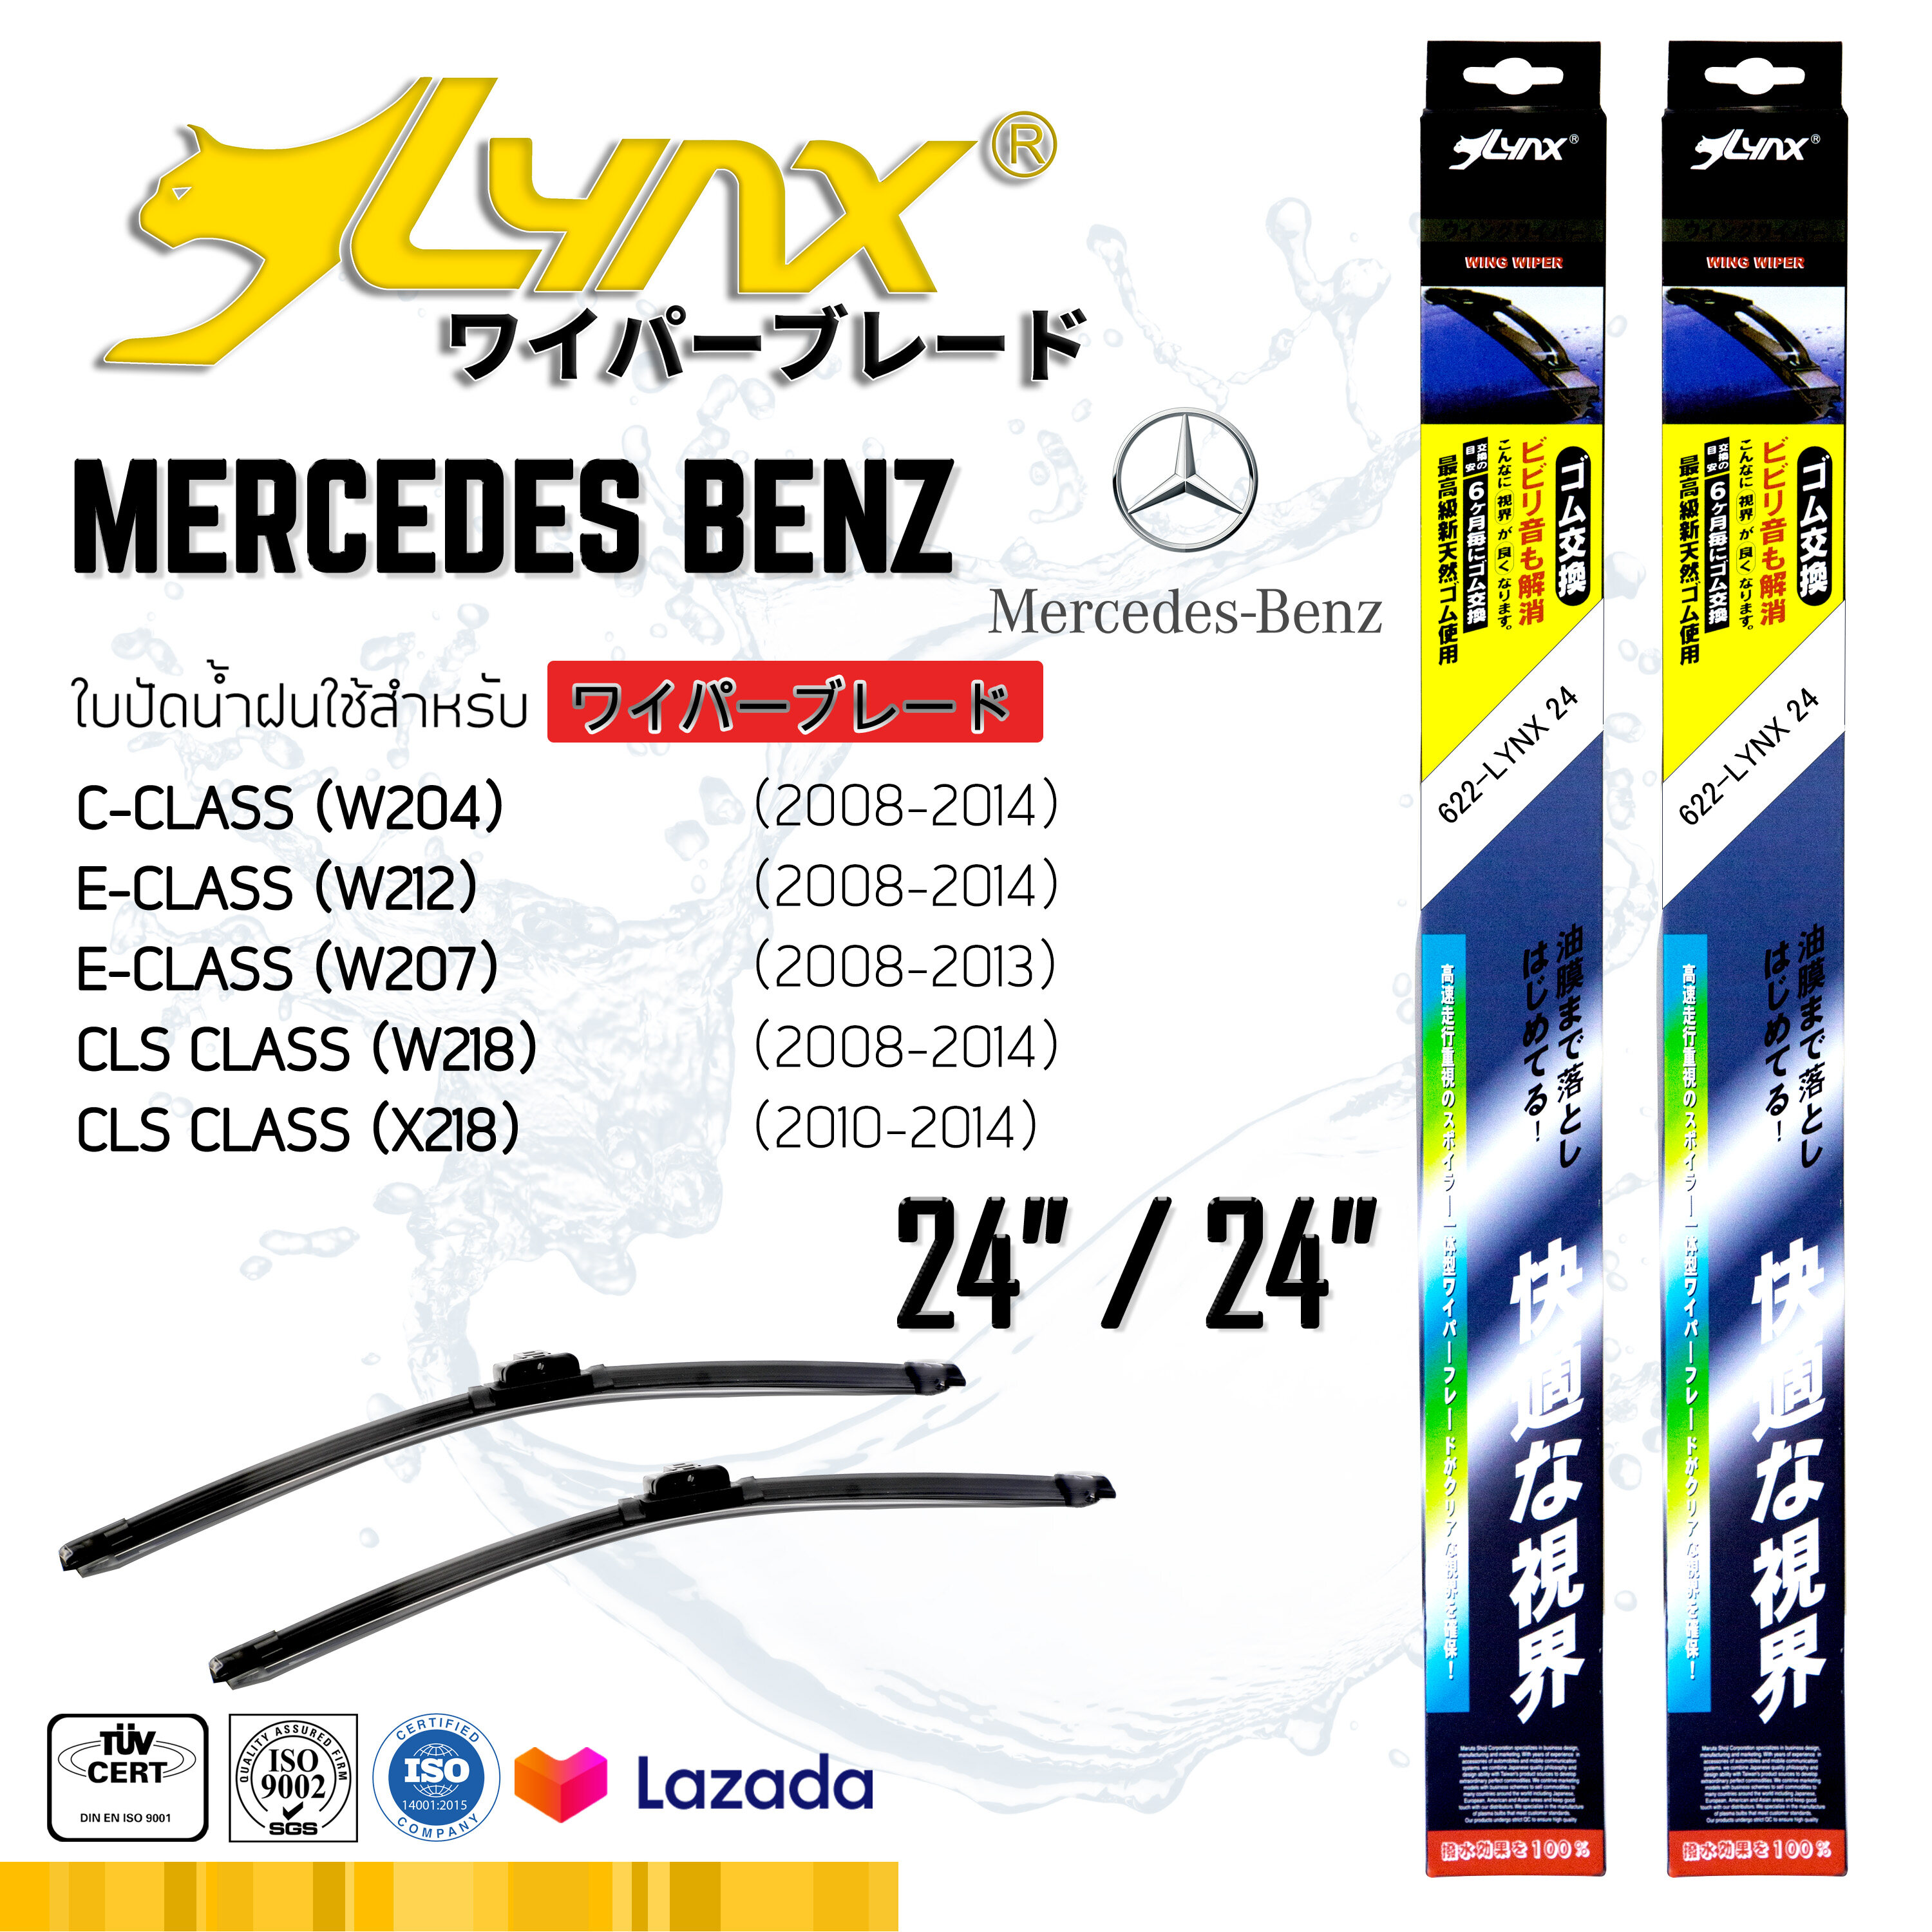 LYNX ใบปัดนำ้ฝน ลิ้งซ์ ขนาด 24 นิ้ว และ 24 นิ้ว ใช้สำหรับ เมอร์เซเดส-เบนซ์ ( ซีคลาส/ อีคลาส/ ซีเอลเอส คลาส ) LYNX Wiper Blade 24